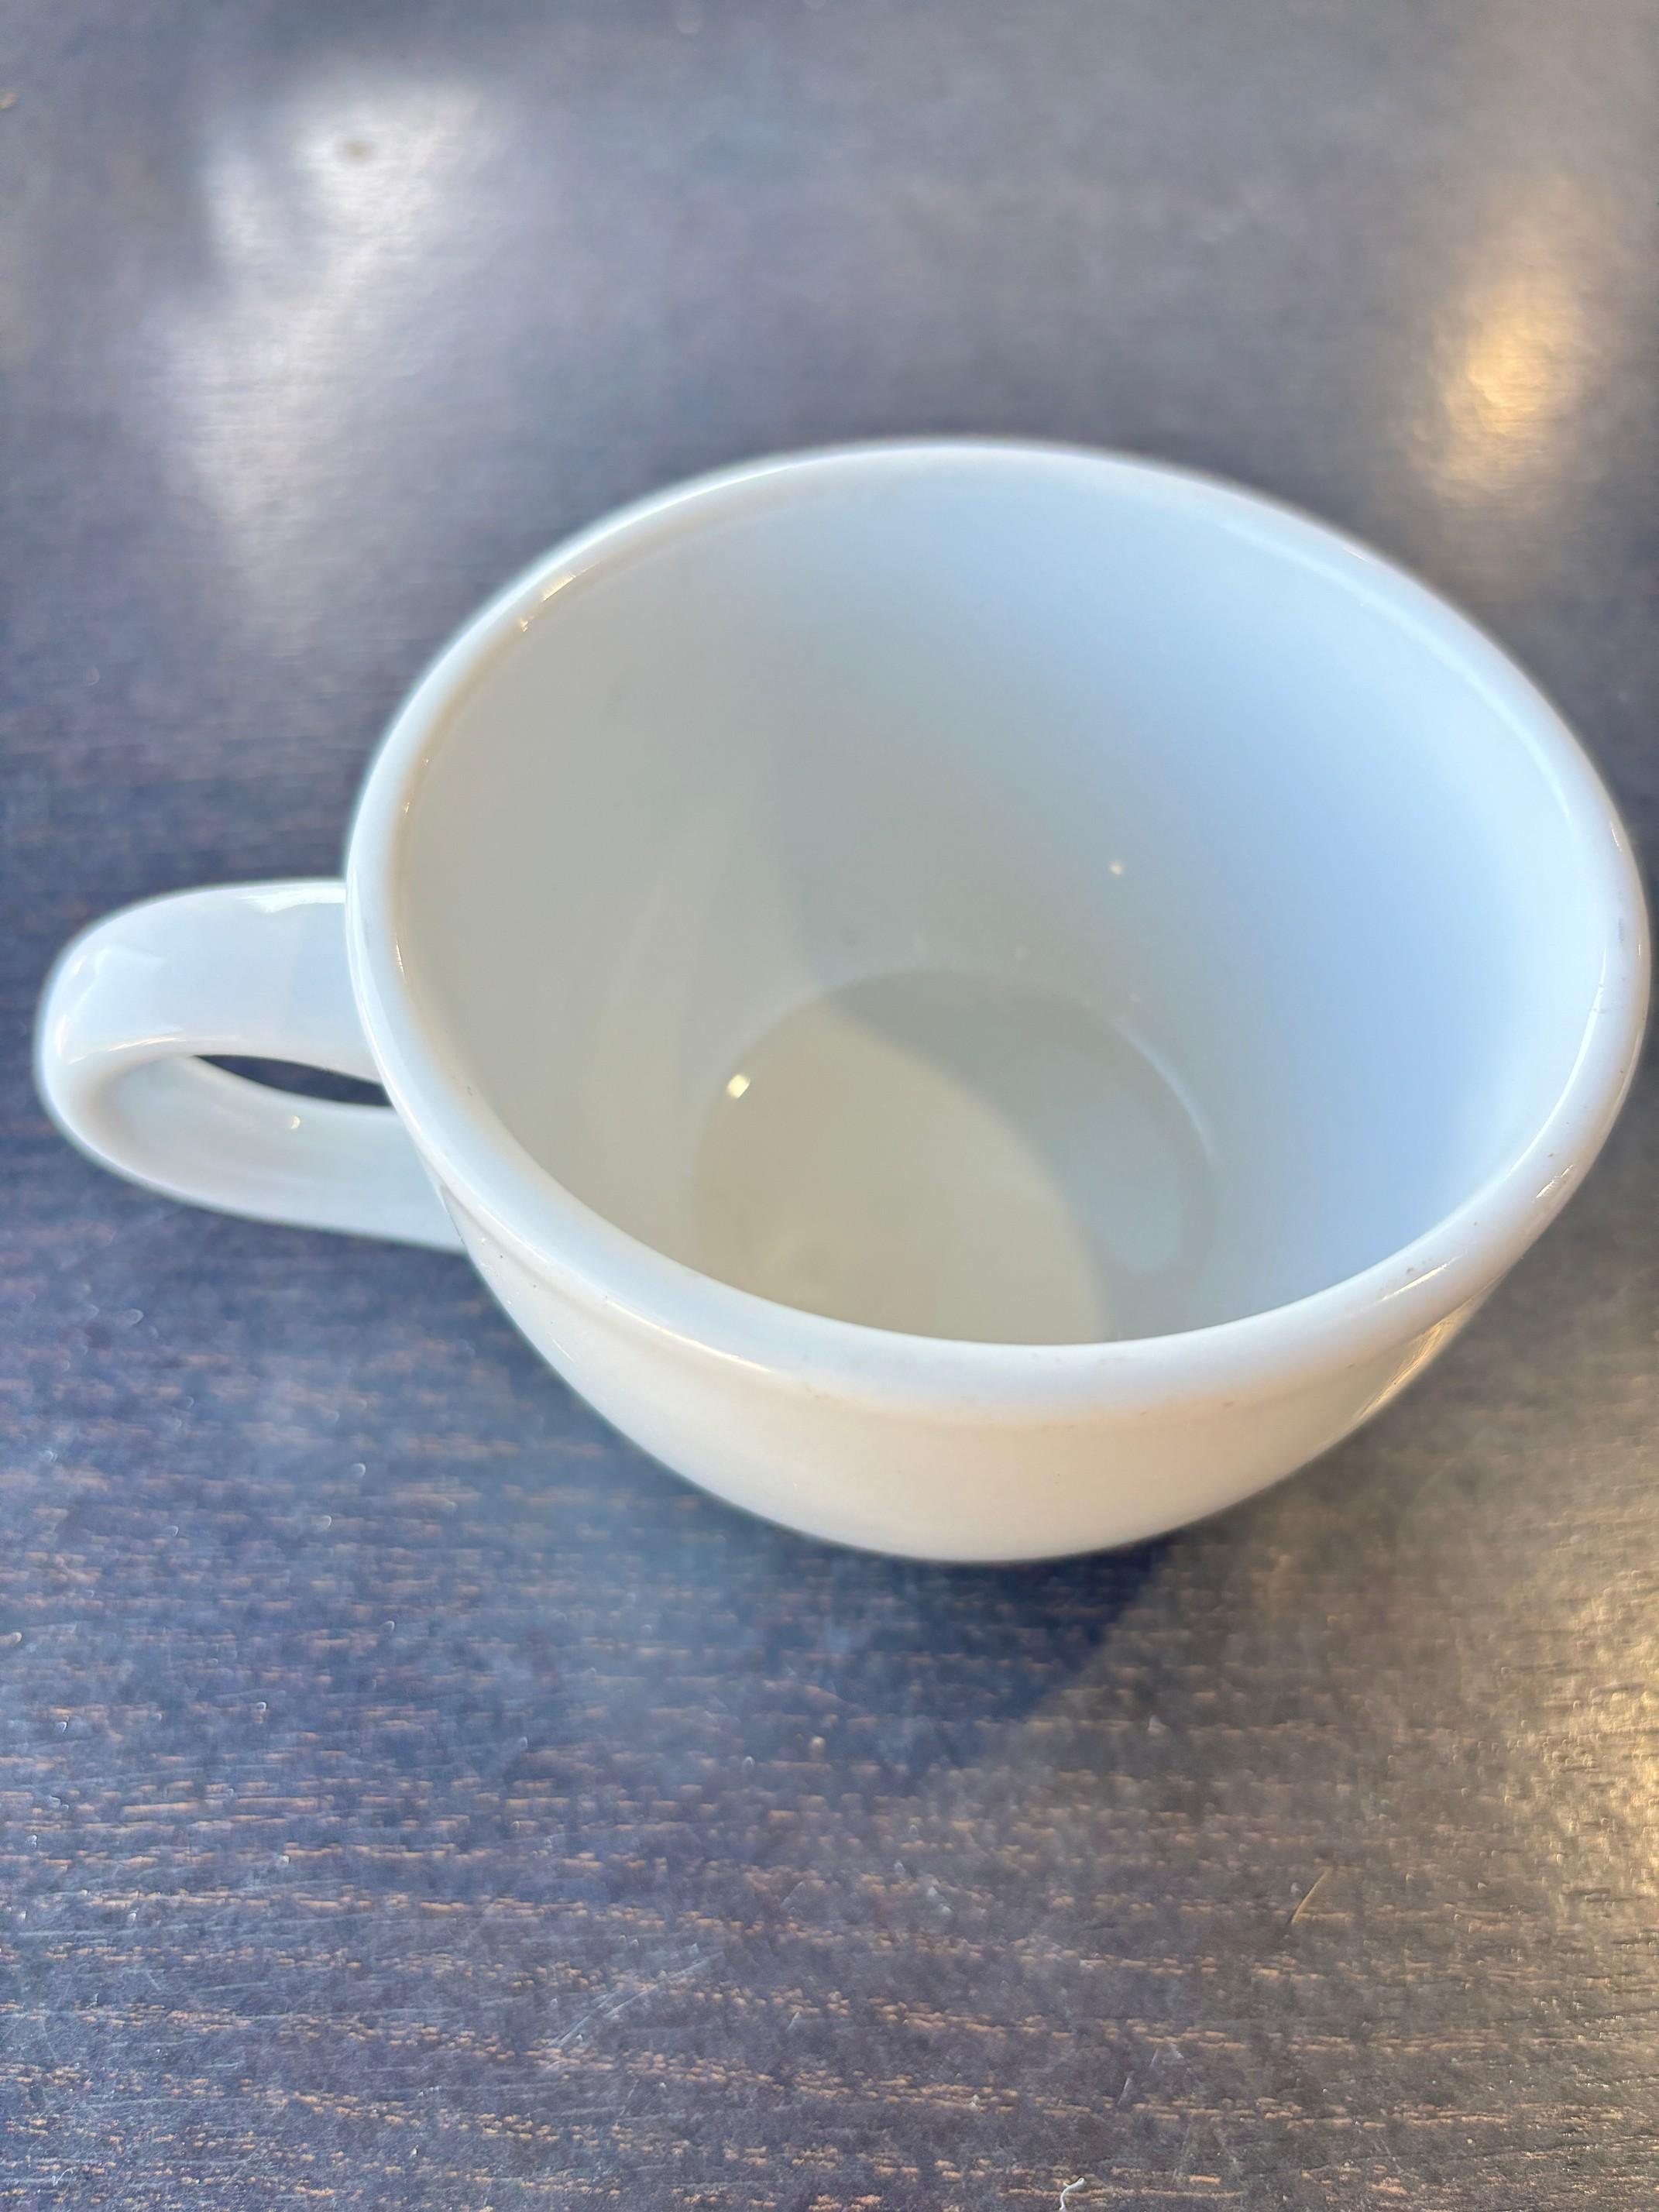 (16) Tuxton Porceliain Coffee Cups - White